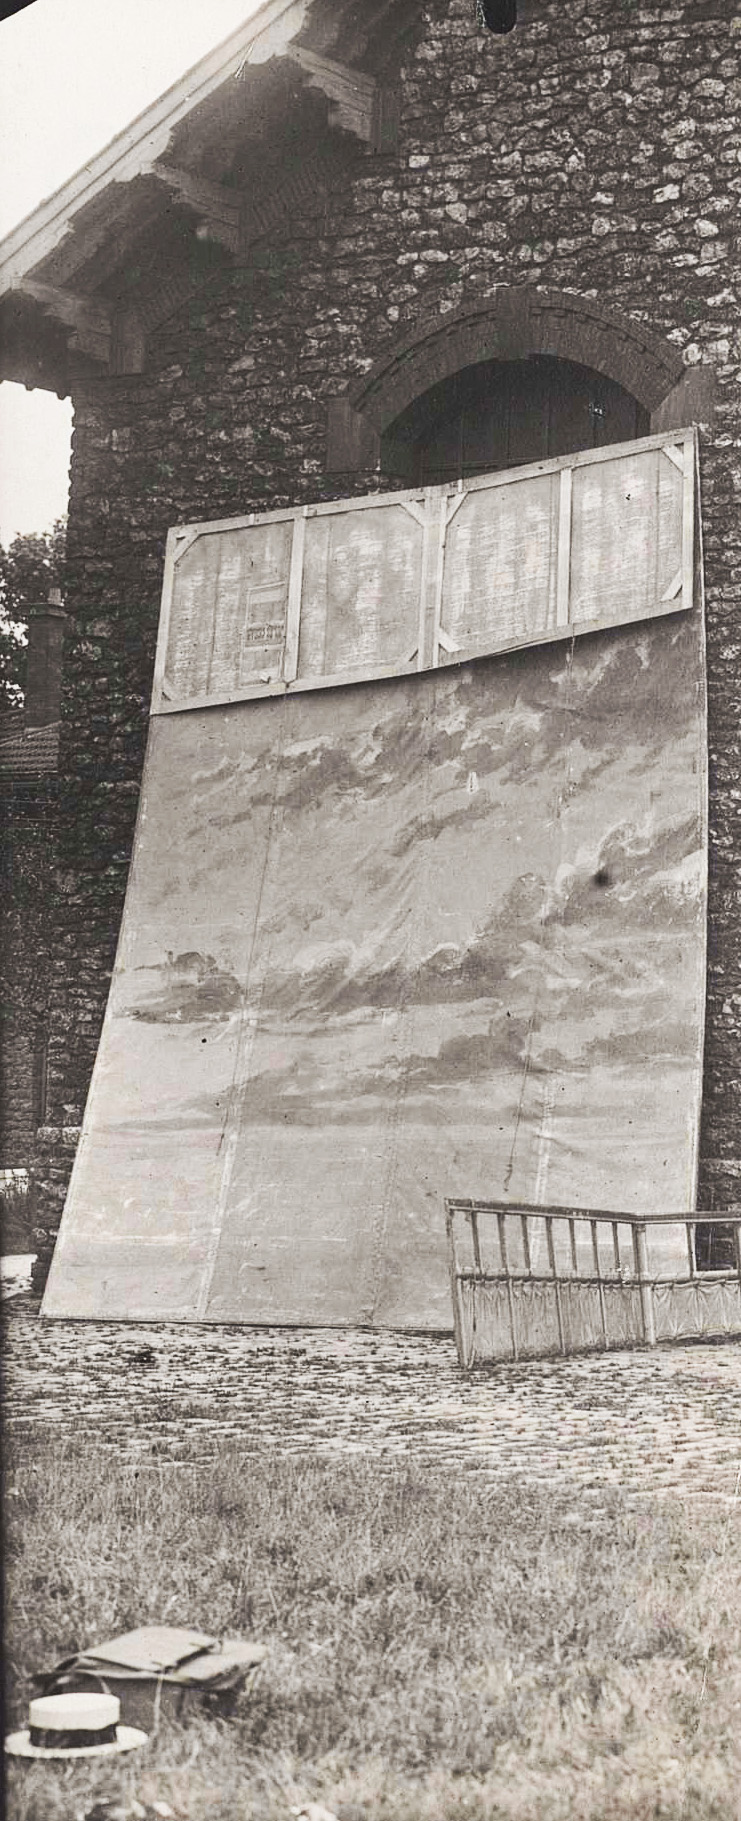 Fond de ciel, posé contre un mur en extérieur, Théâtre de Odéon, première moitié du XXe siècle. Archives nationales